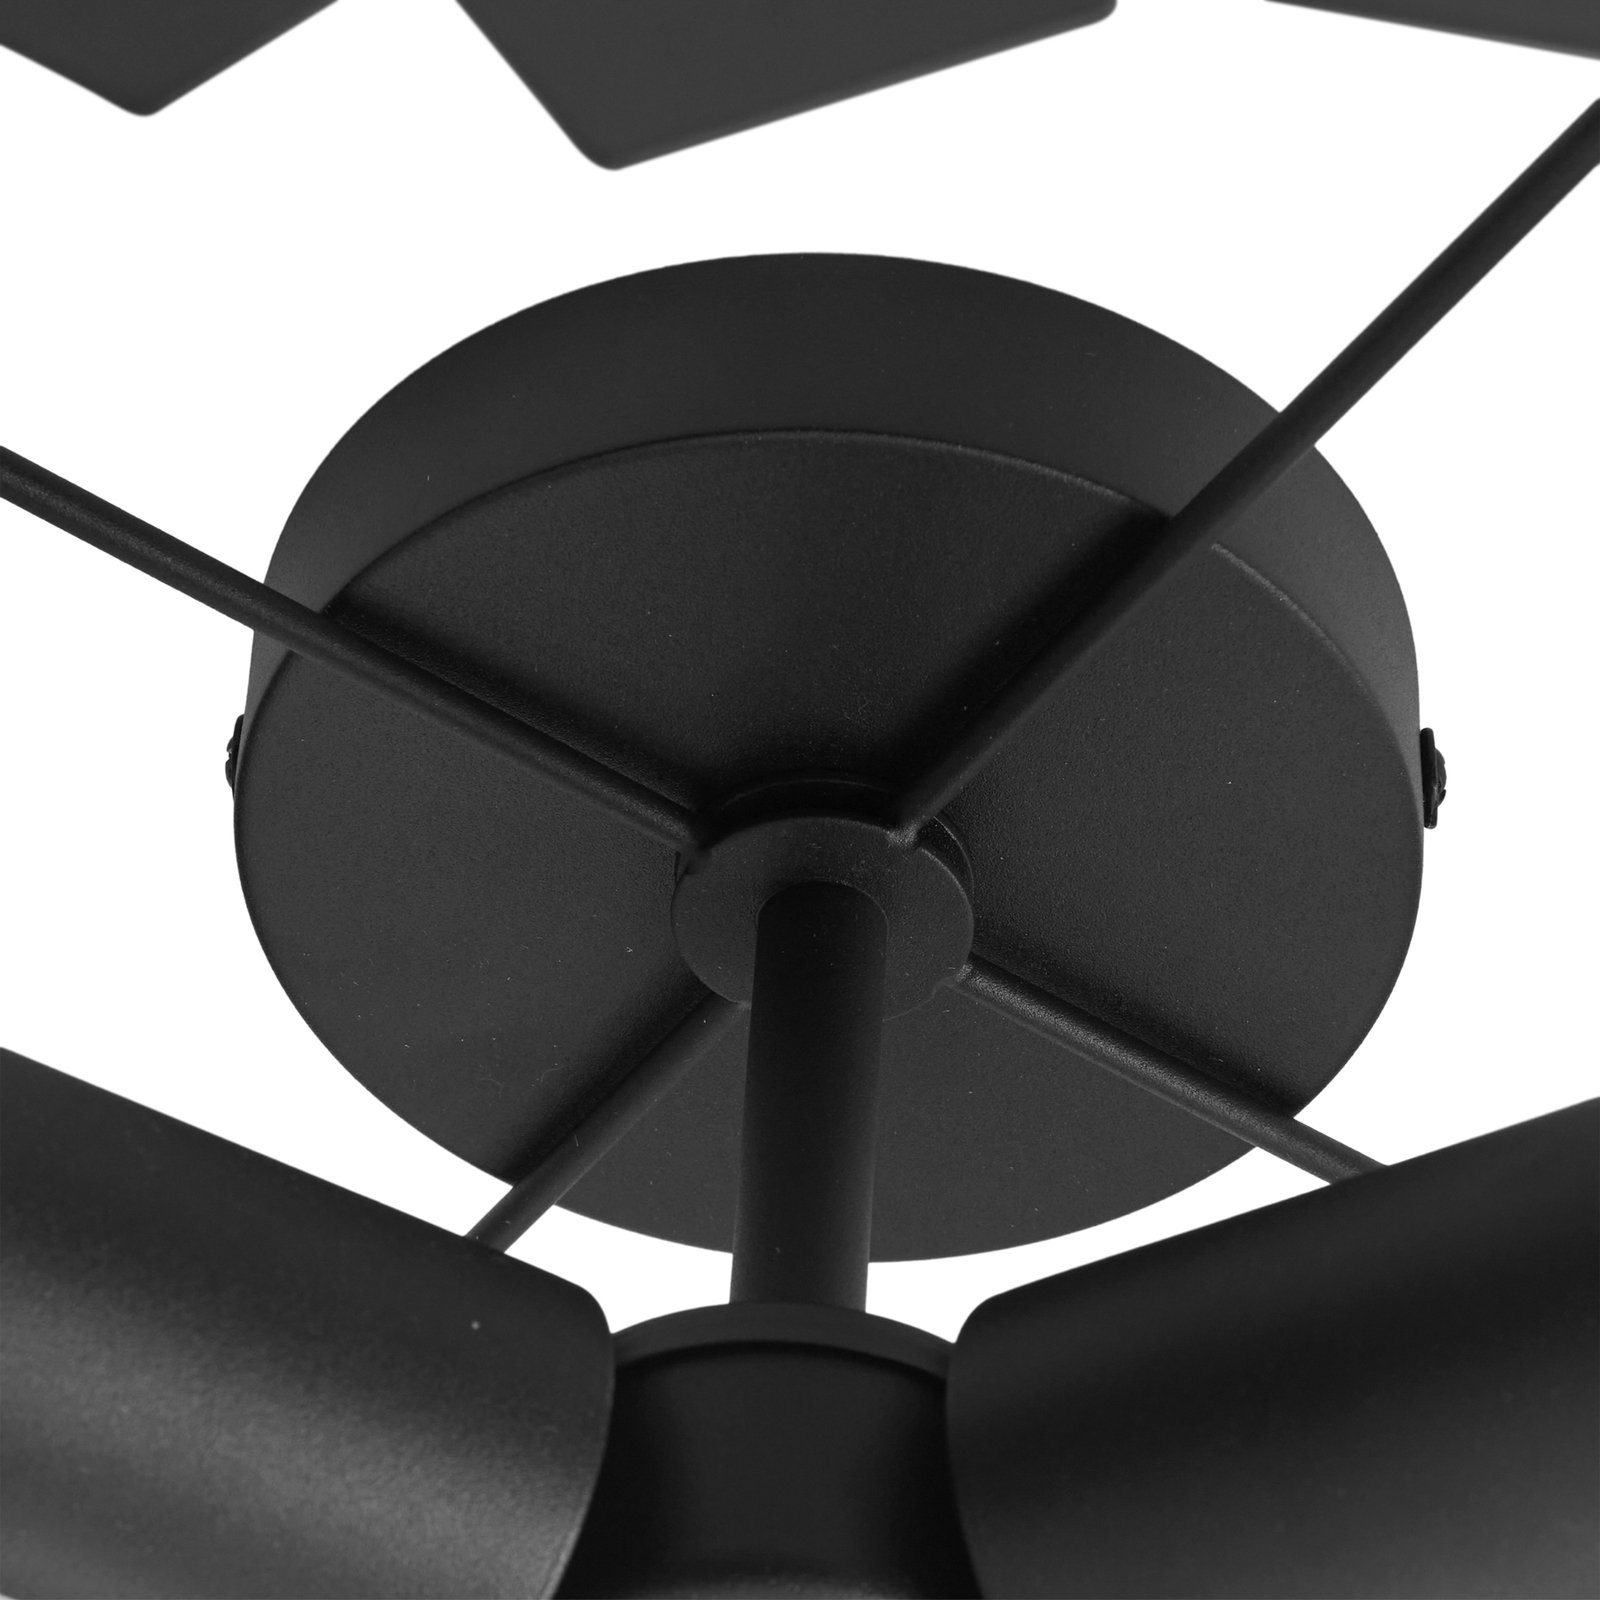 Lucande Aeloria ceiling light, black, iron, Ø 50 cm, E27